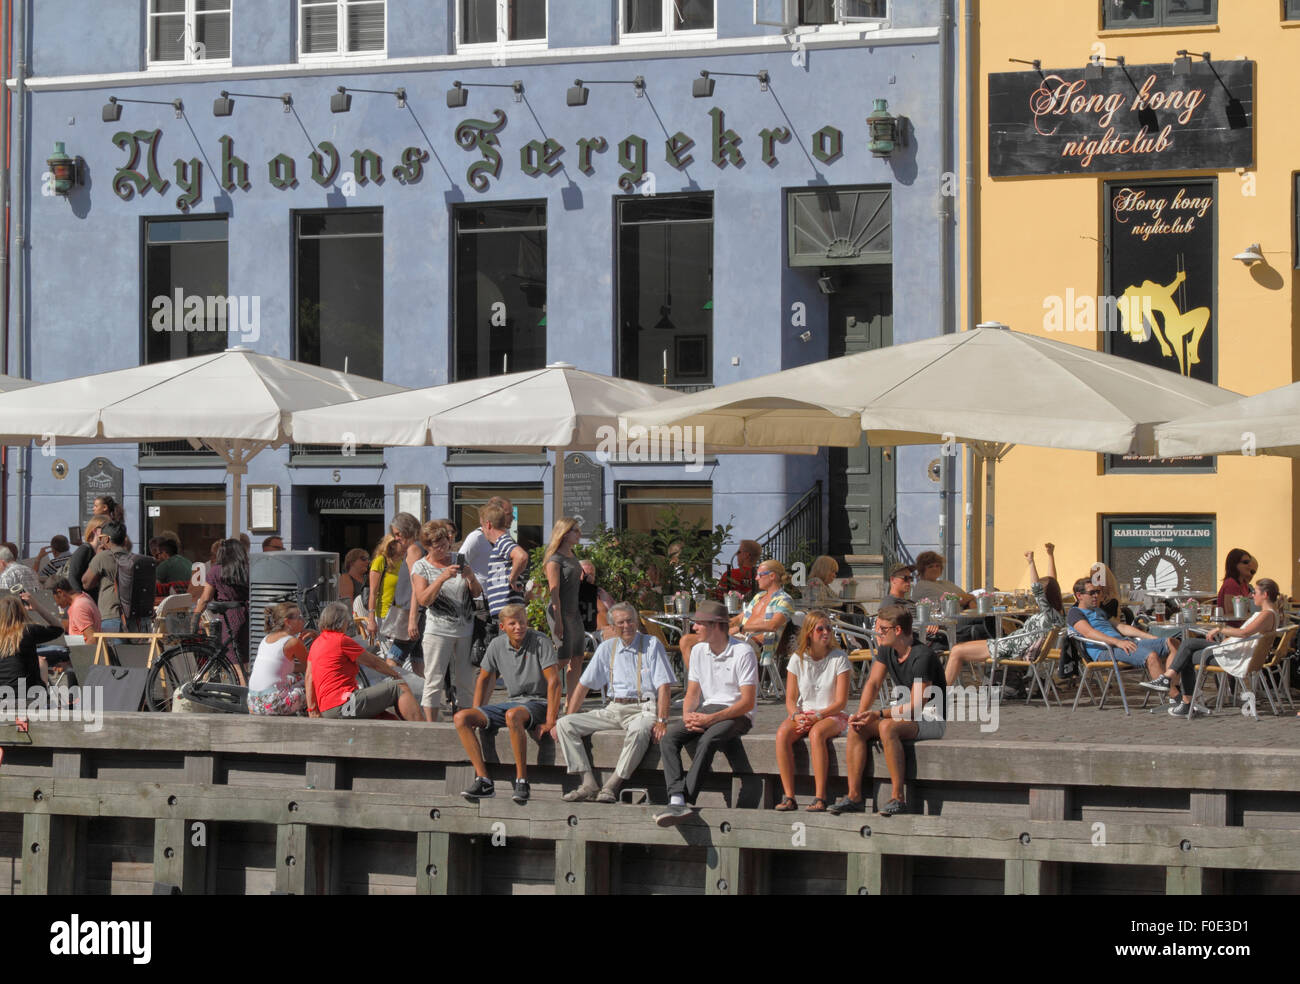 In gemütlichem Ambiente im bezaubernden Nyhavn treffen sich die Menschen und unterhalten sich über einen Drink in der Sonne. Viele Leute sitzen gerne auf dem Kai unter den alten Schiffen. Hygge. Stockfoto